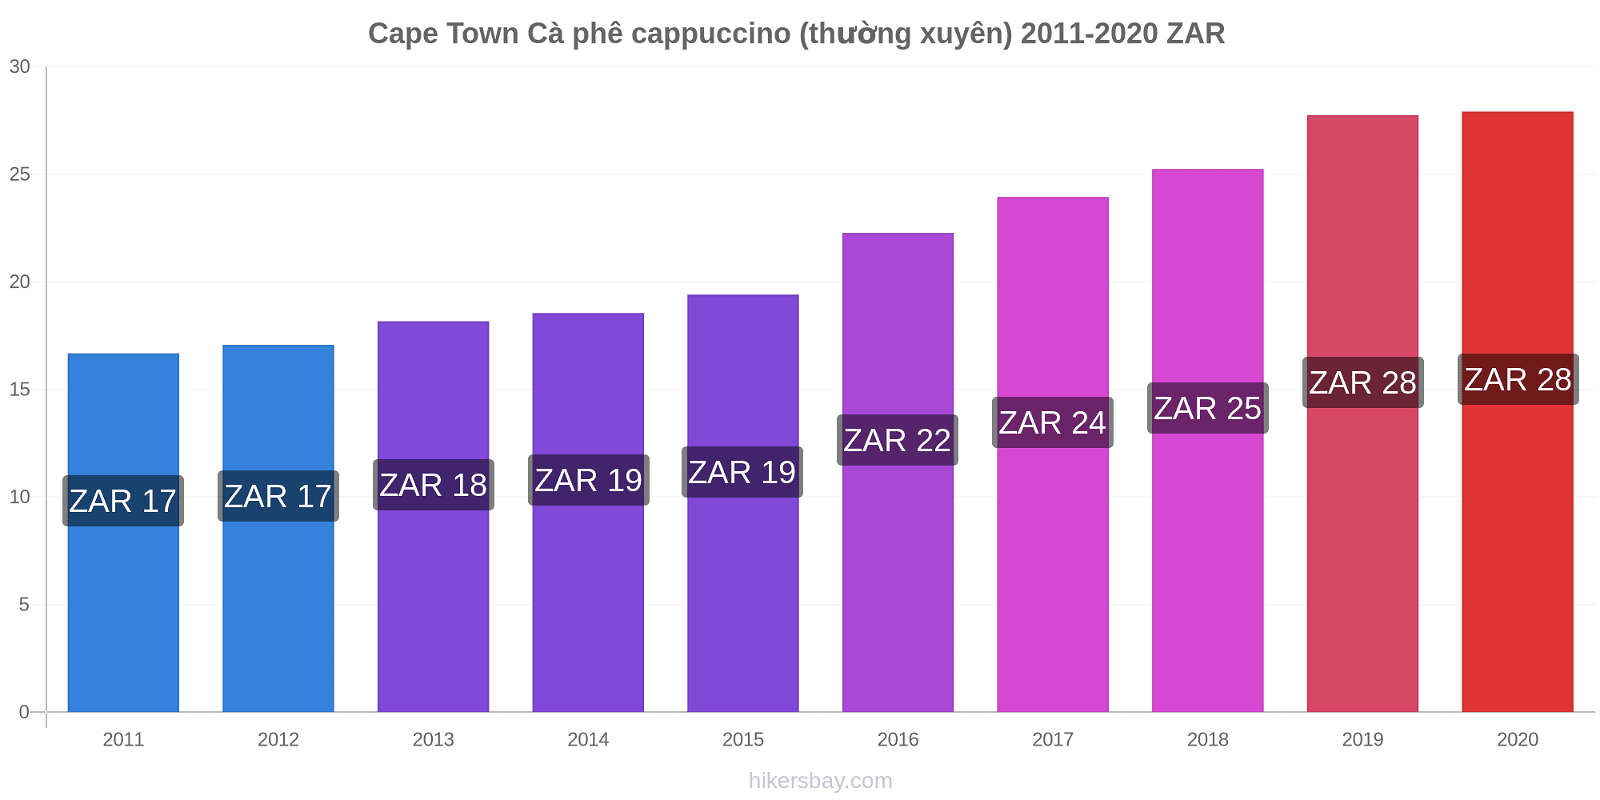 Cape Town thay đổi giá Cà phê cappuccino (thường xuyên) hikersbay.com